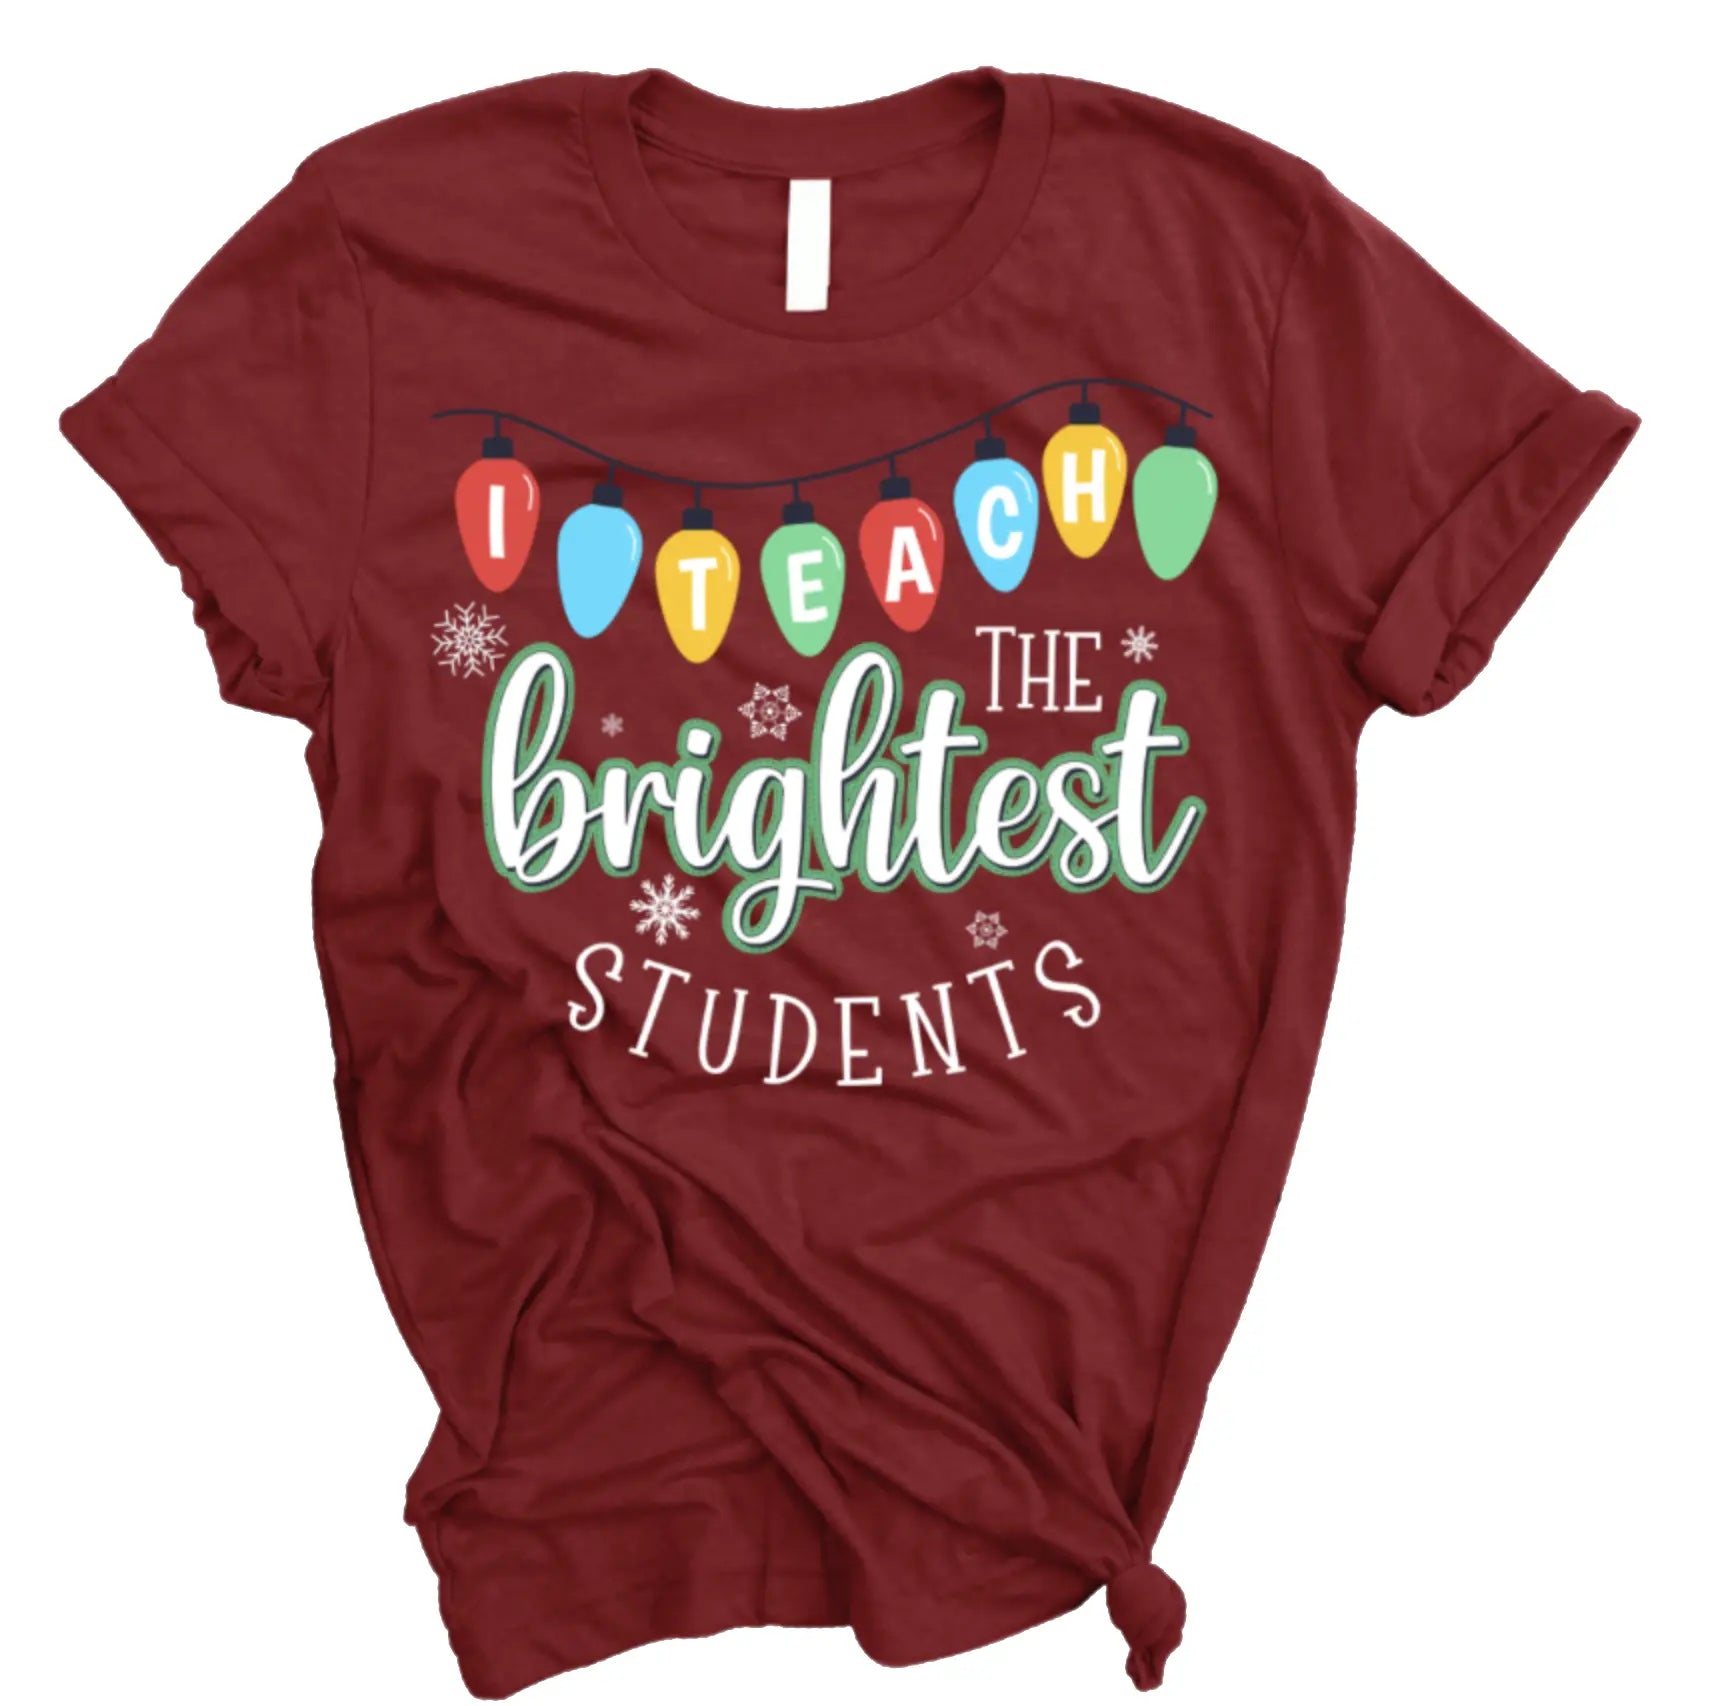 "I Teach The Brightest Students" Teacher Tee